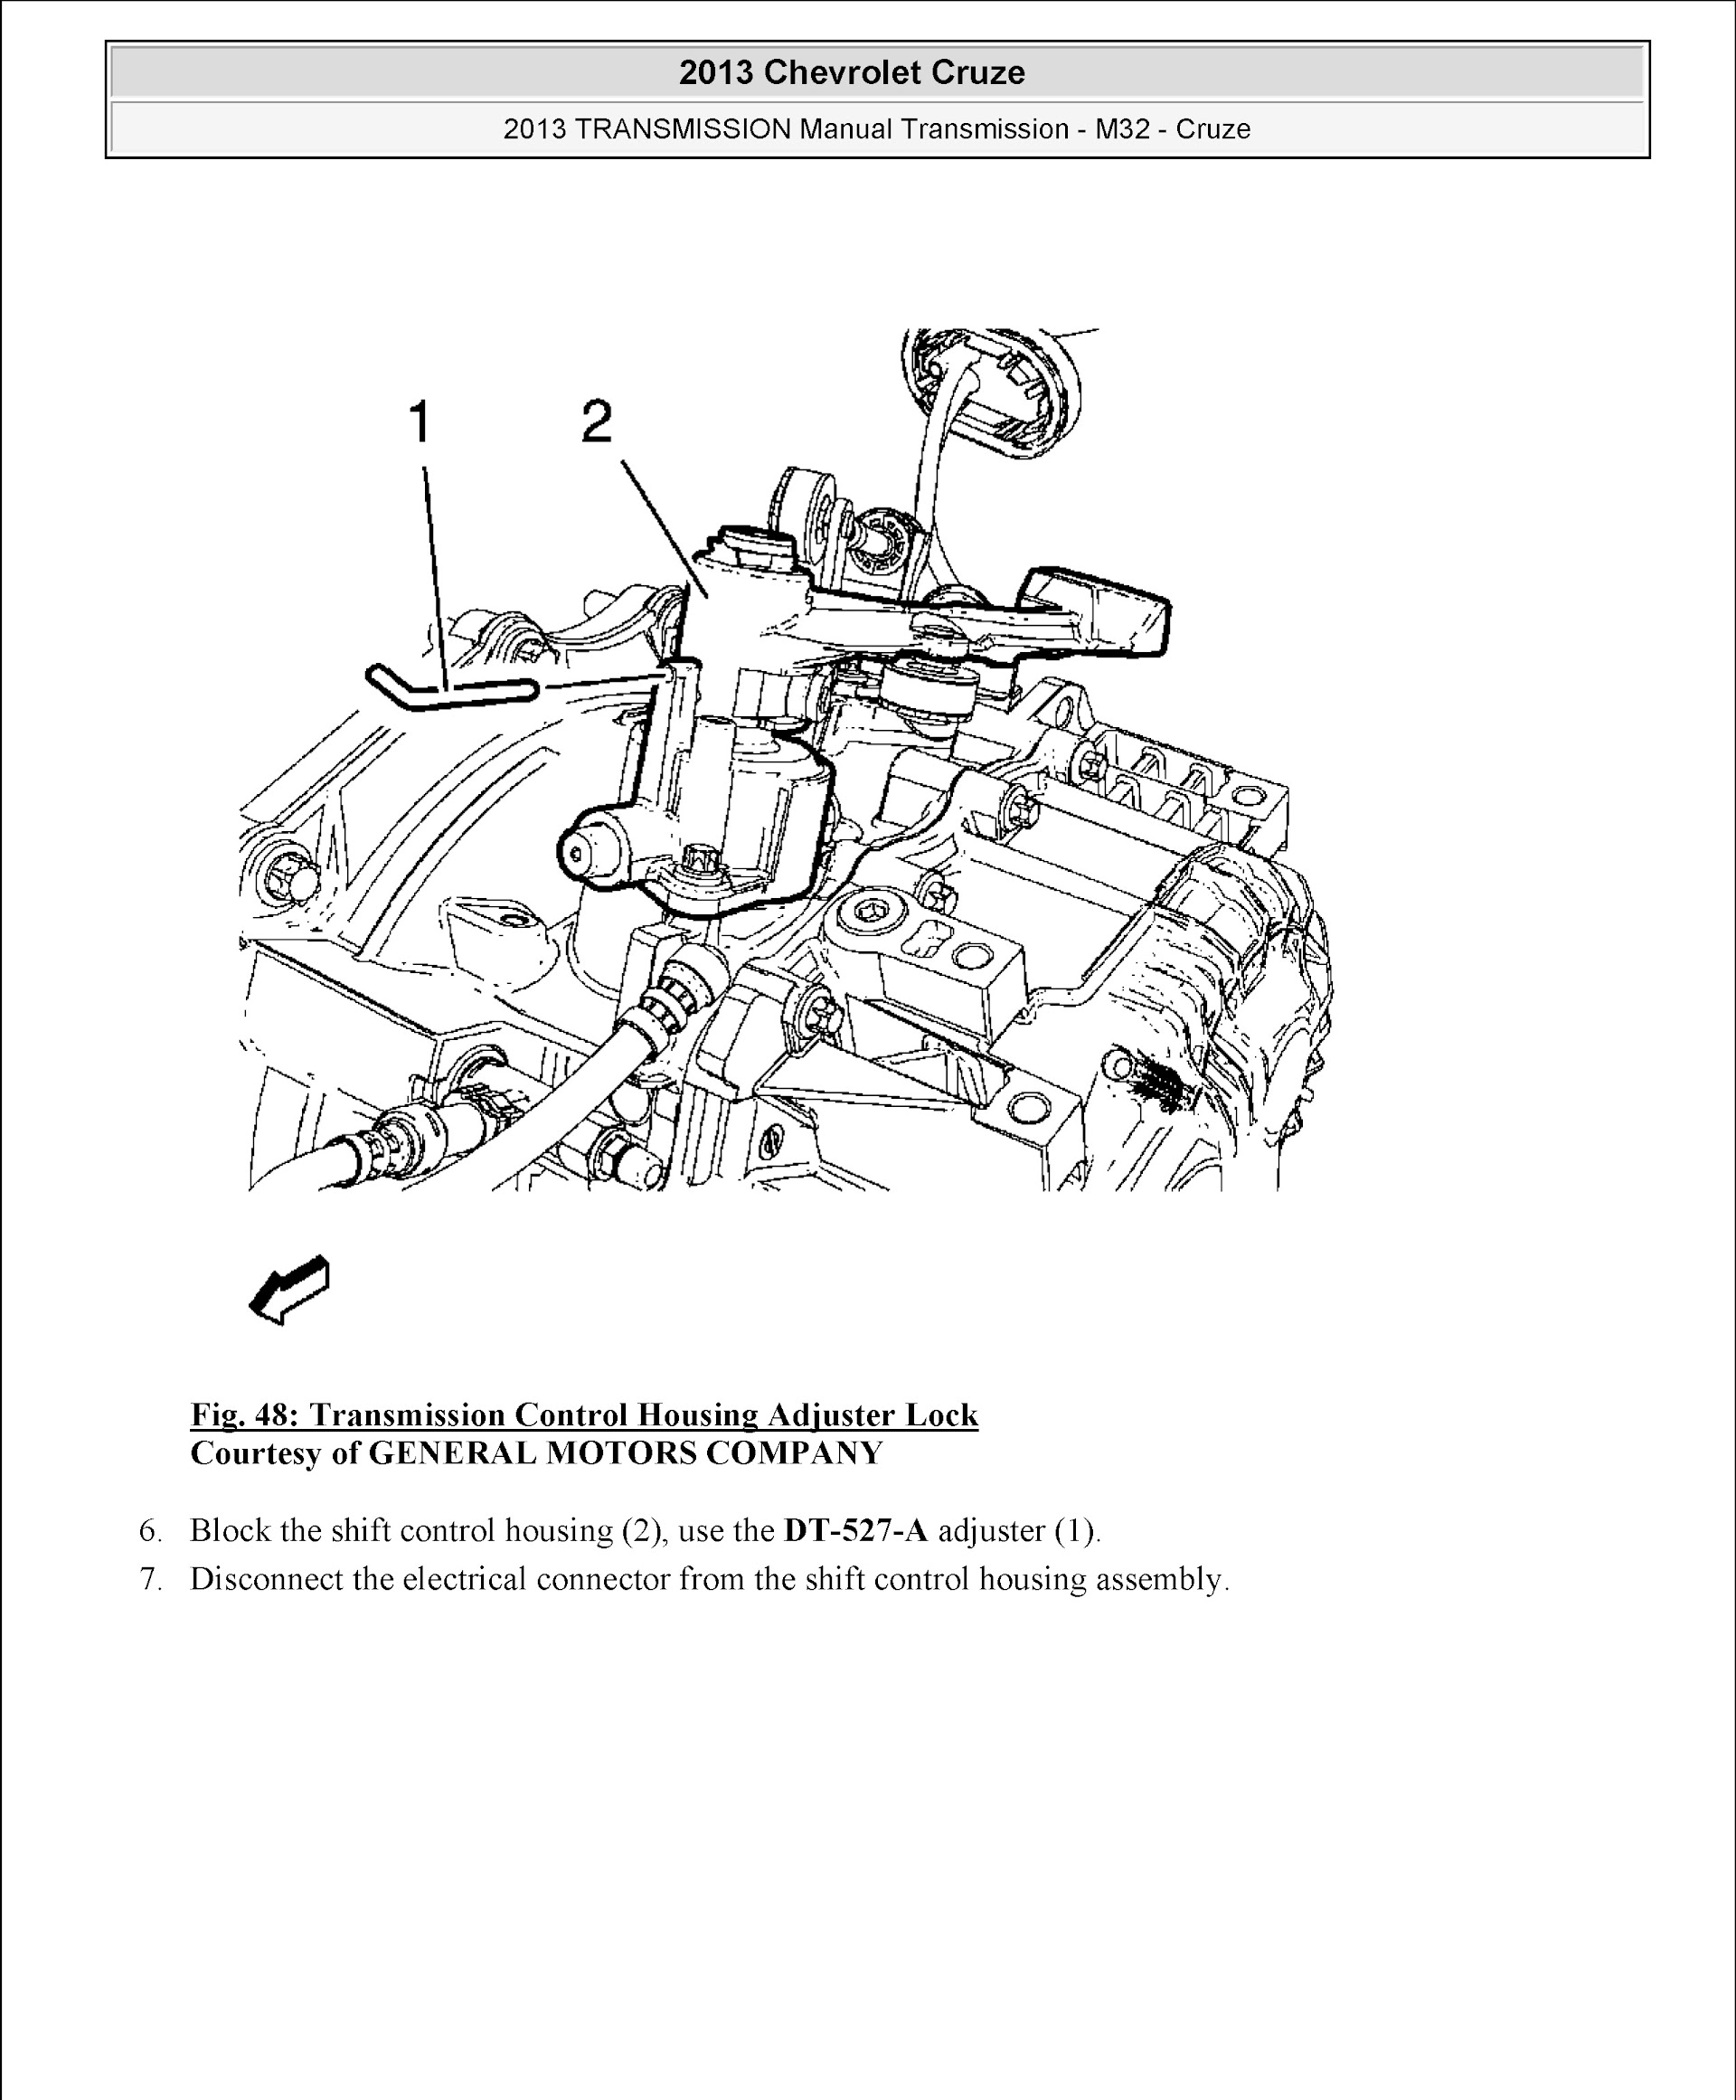 CONTENTS: 2010-2016 Chevrolet Cruze Repair Manual, manual transmission